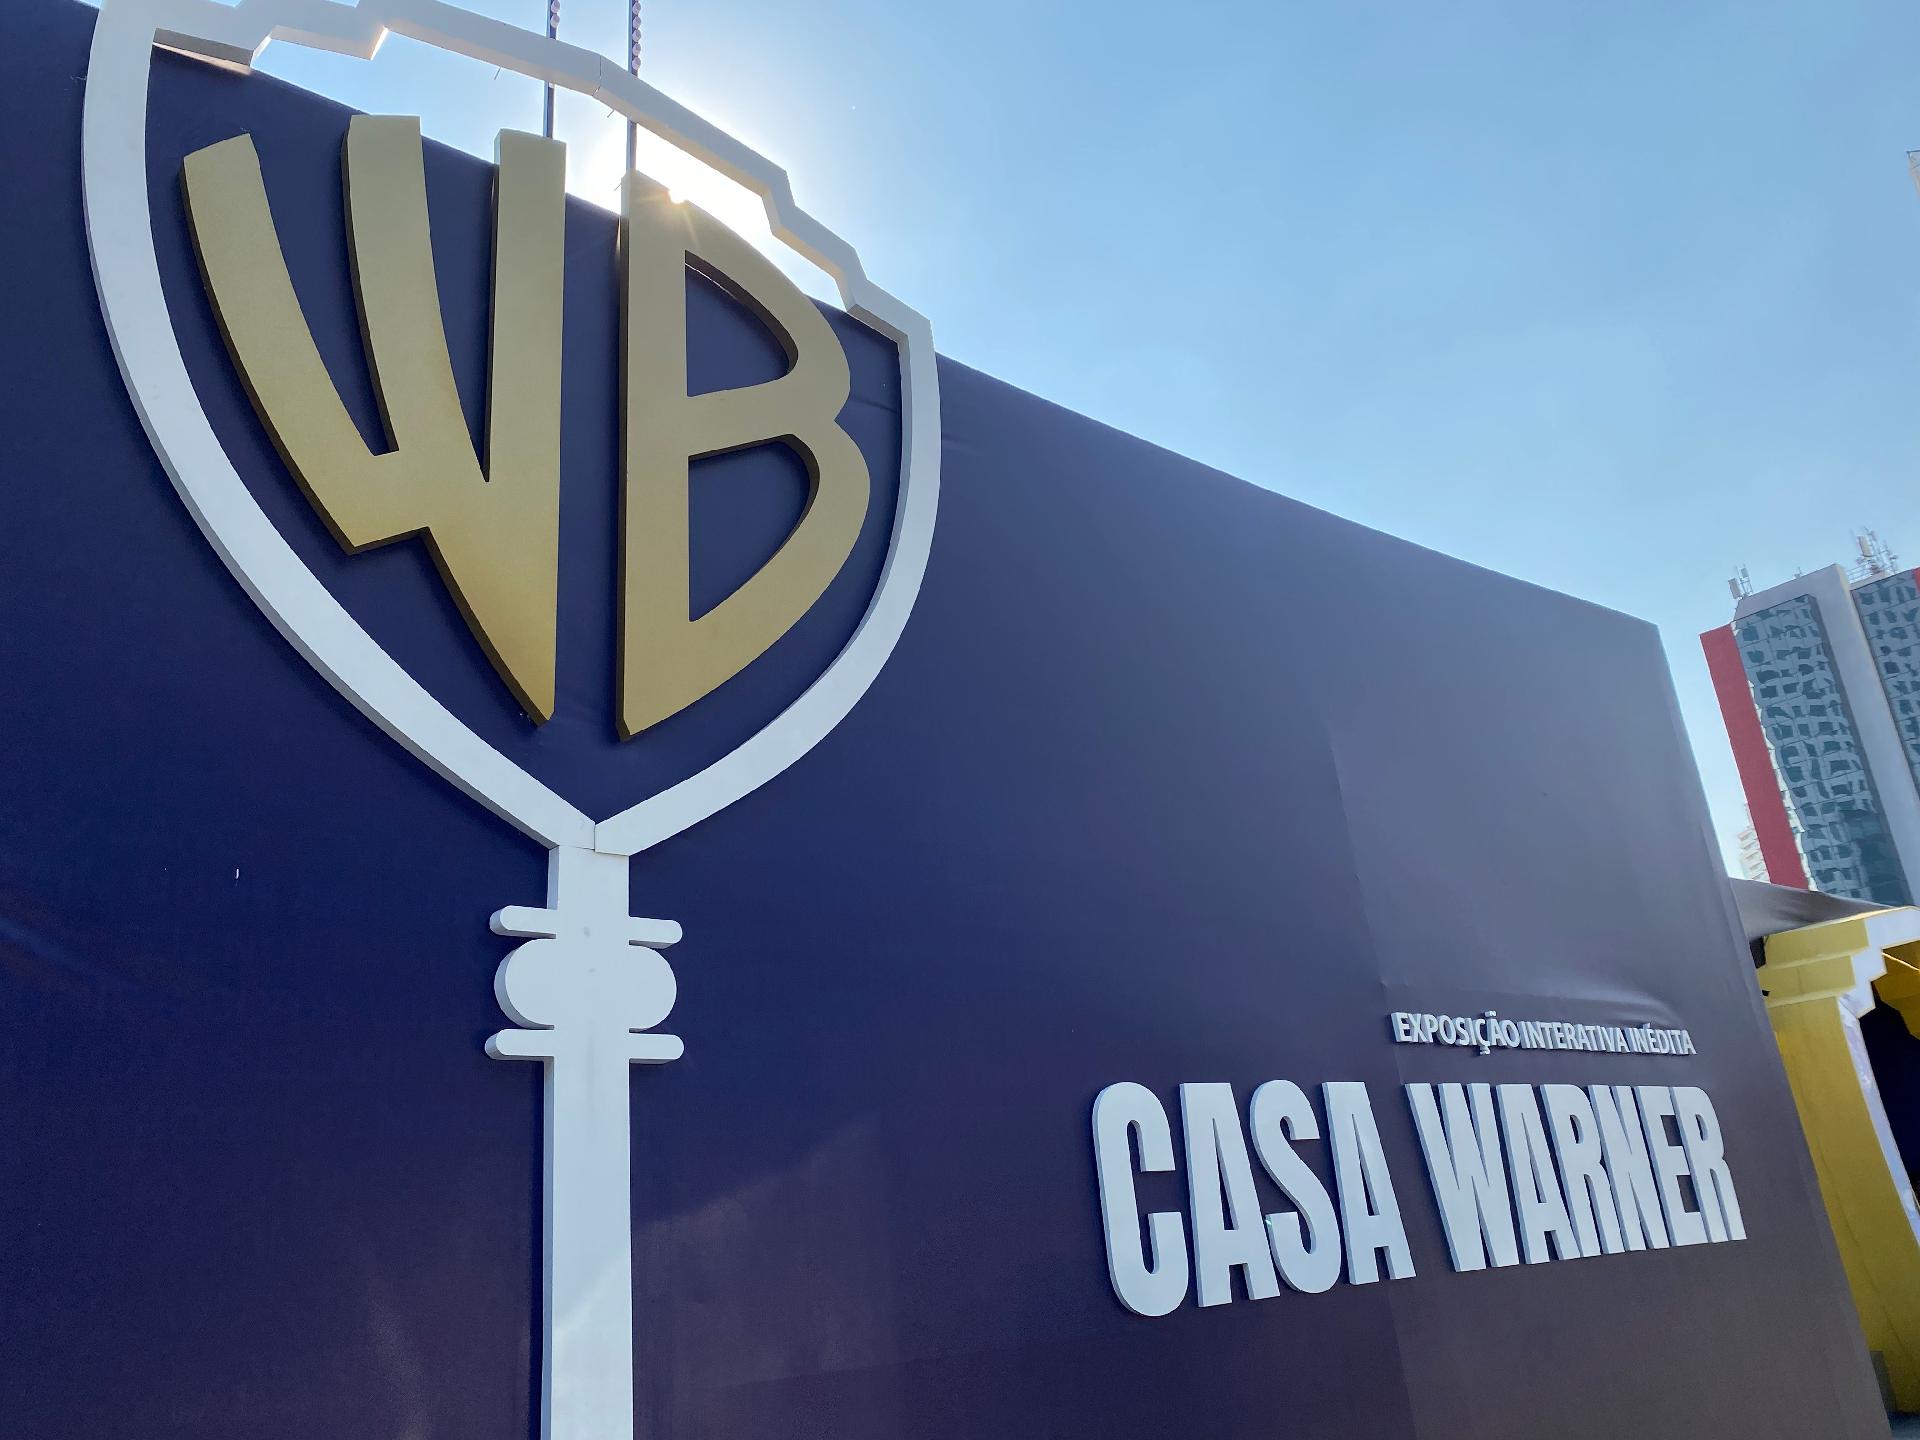 Warner Bros comemora 100 anos com exposição imersiva em São Paulo